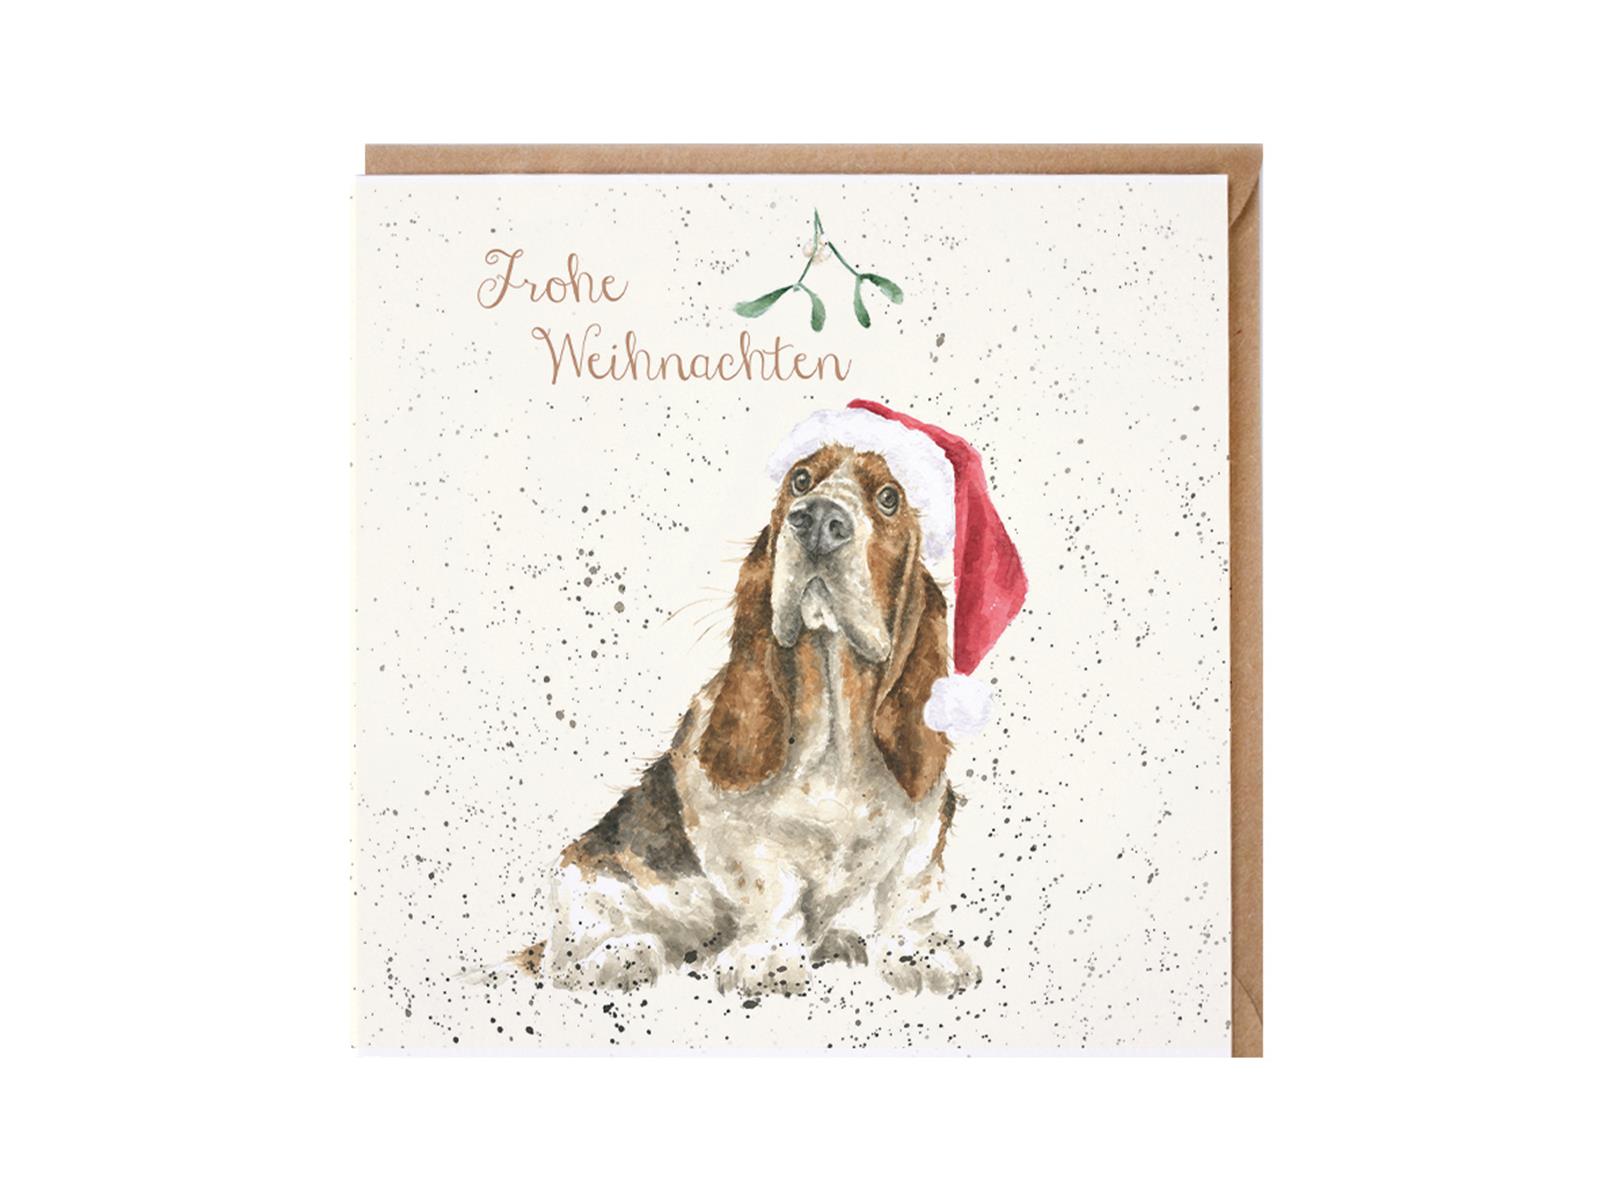 Wrendale Doppelkarte Weihnachten mit Umschlag, Frohe Weihnachten, Motiv Hund mit Weihnachtsmütze, 15x15 cm